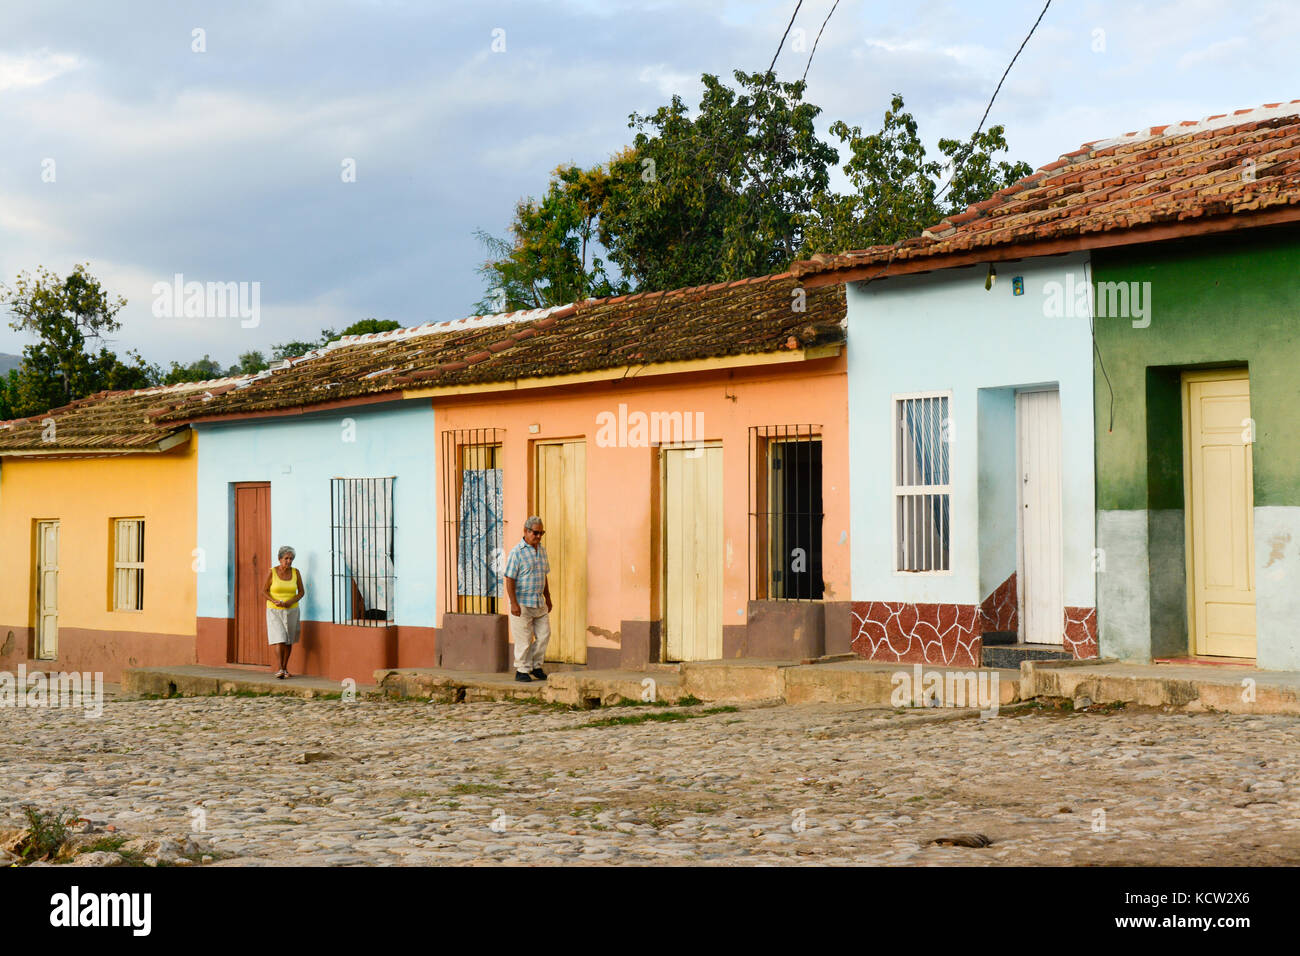 Mann und Frau, Spaziergang, vorbei an einer Reihe von bunten Häusern, Trinidad, Kuba Stockfoto